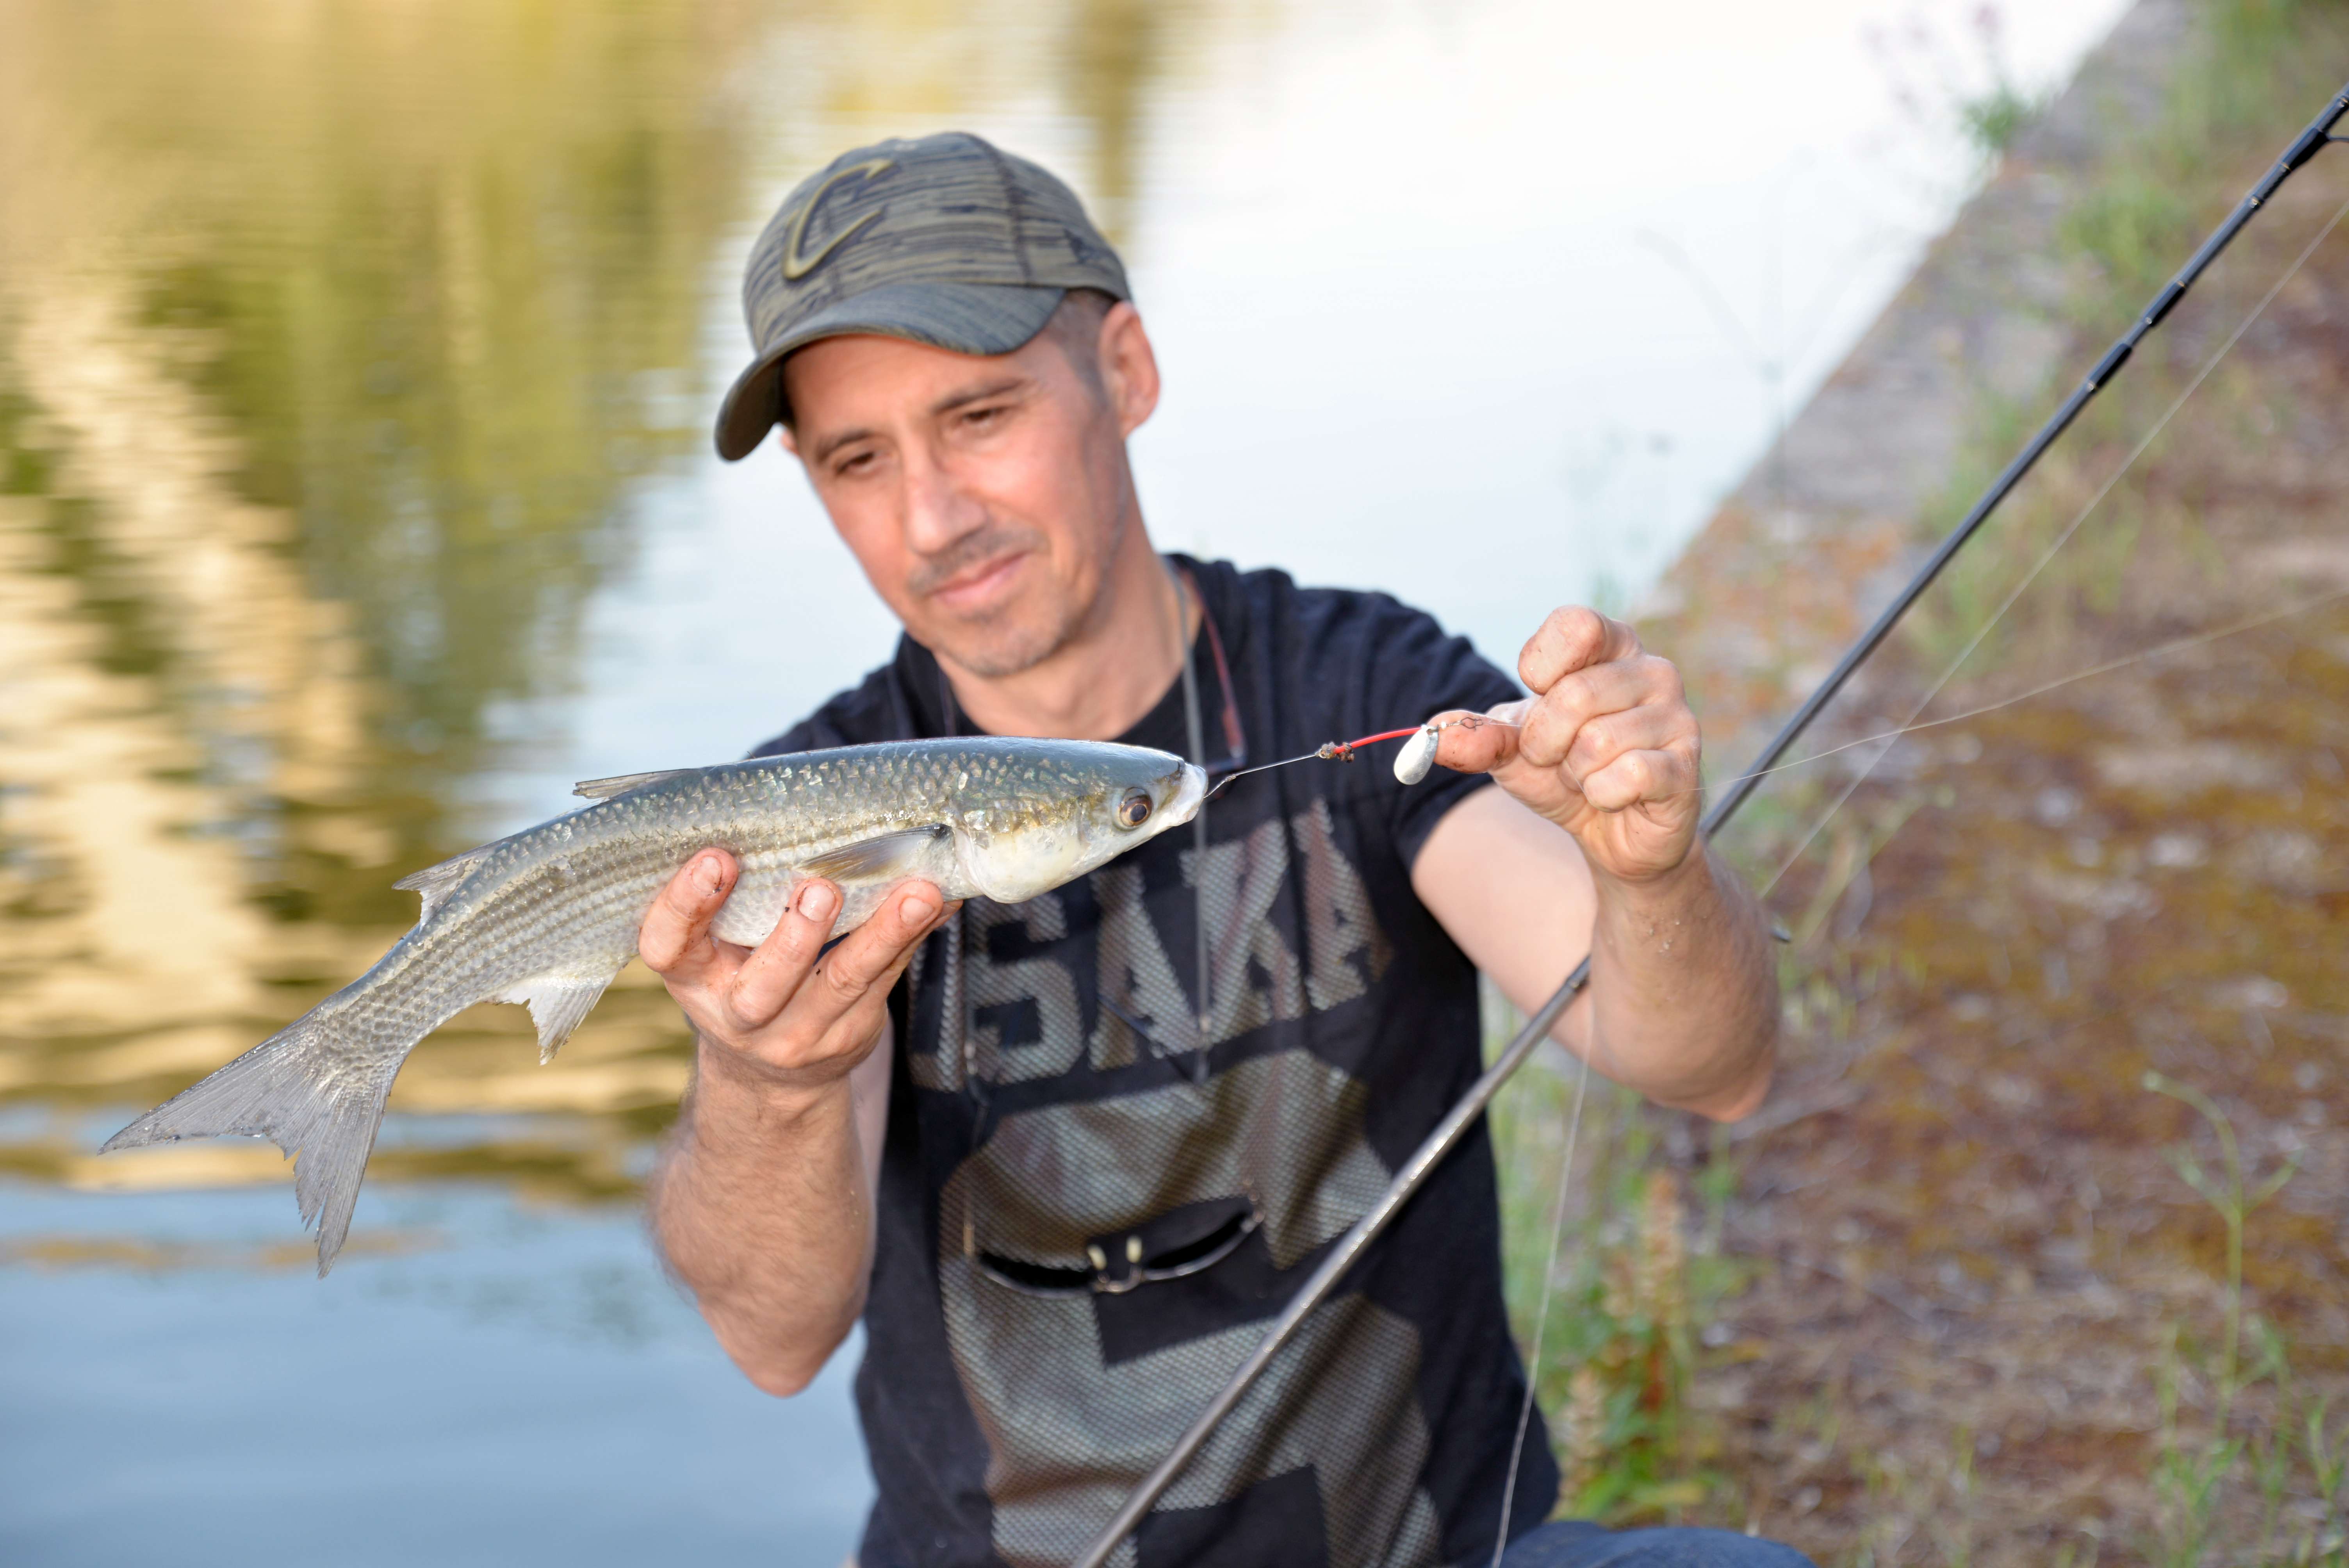 Sport de pêche : comment pêcher à la cuillère ? – Fit Super-Humain